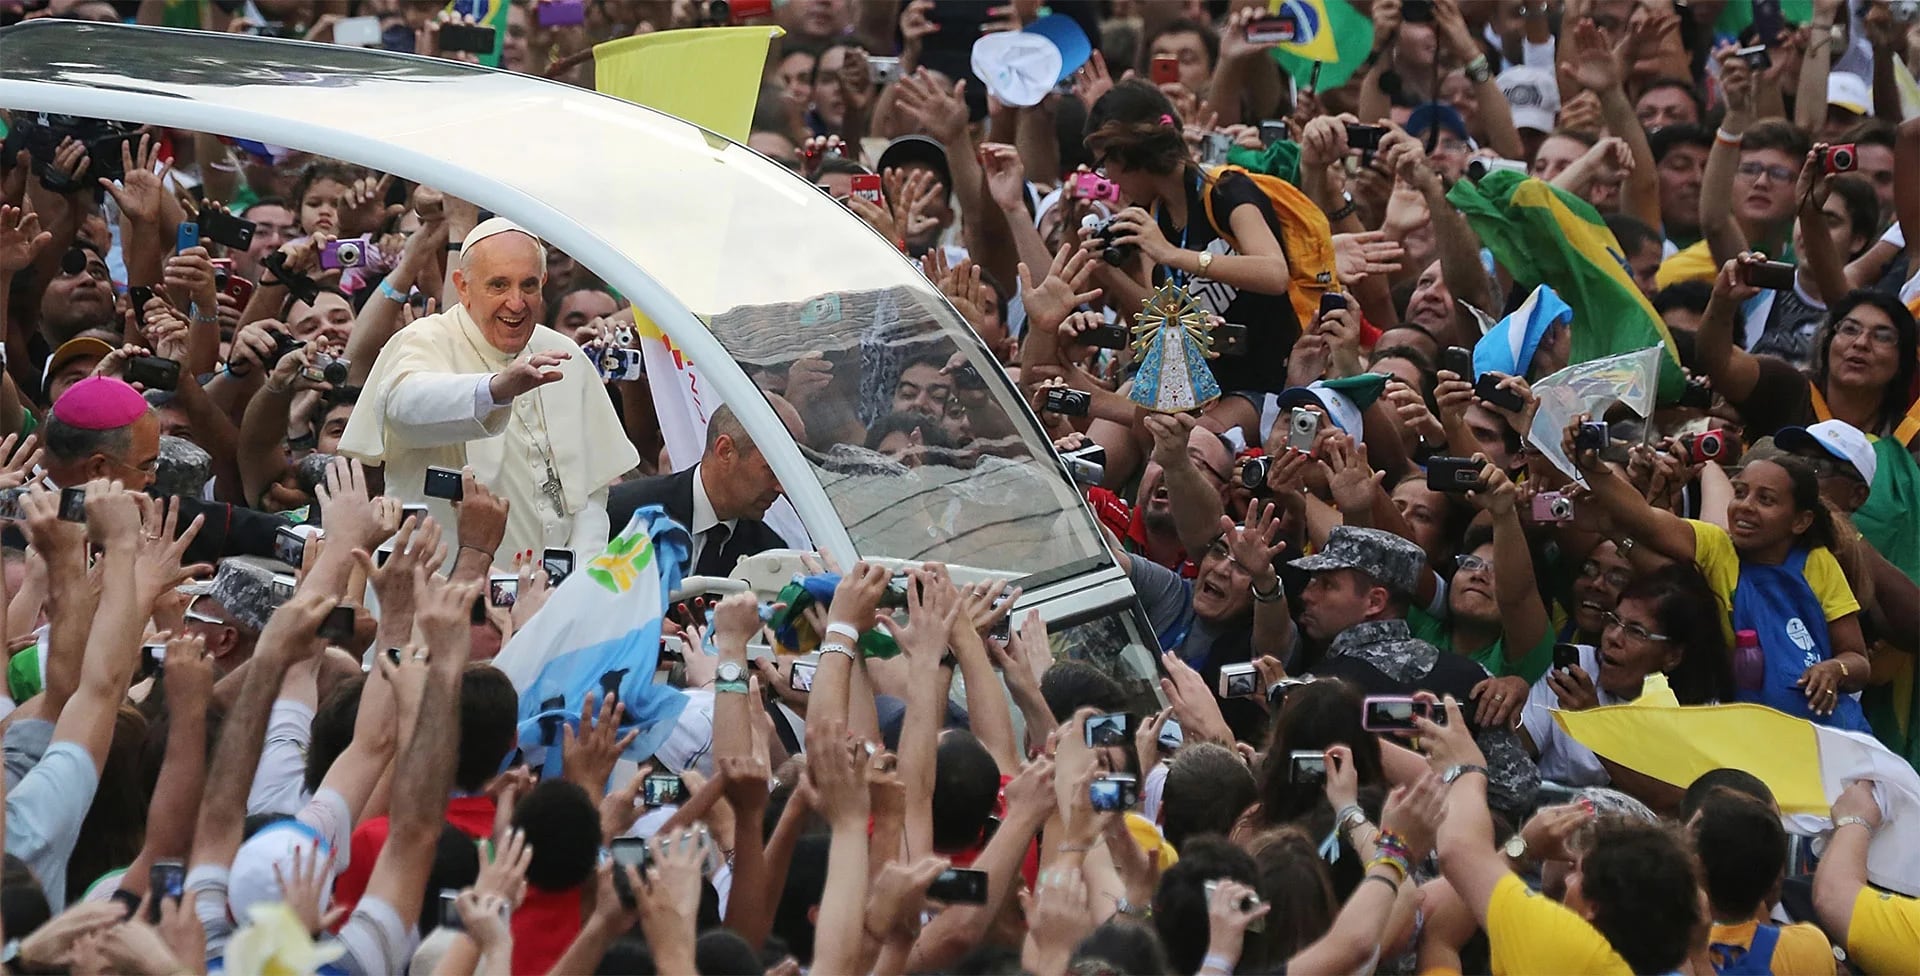 El Papa Francisco durante una de sus recorridas en la visita a Brasil en 2013. Fue su primer viaje apostólico fuera de Italia